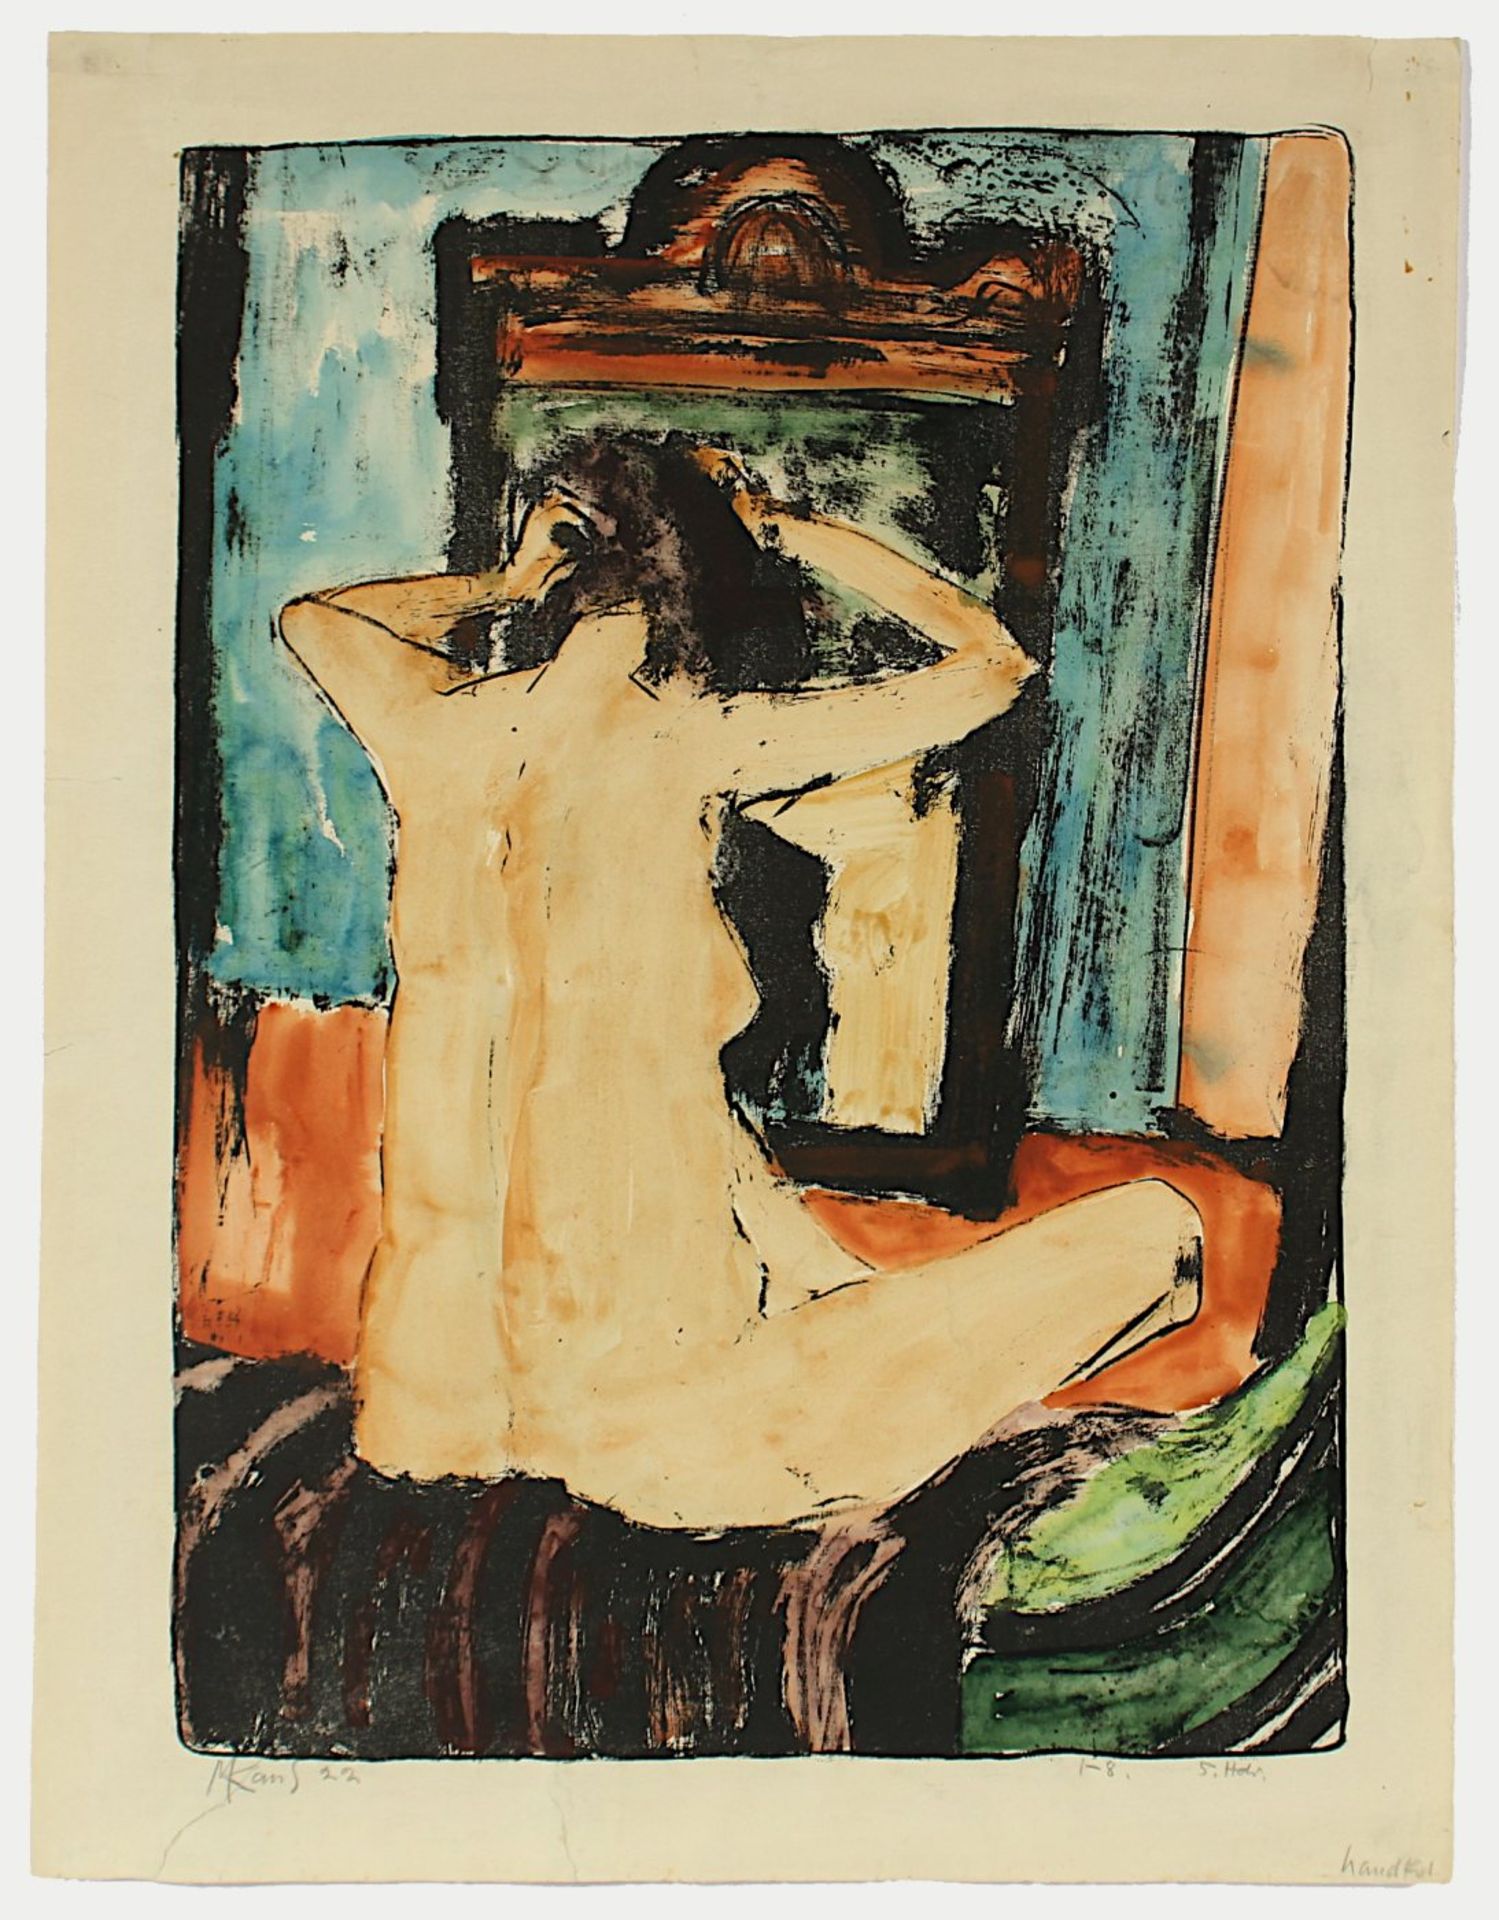 KAUS, Max, "Rückenakt vor einem Spiegel", Original-Lithografie, handkoloriert, 57 x 42, handsigniert - Image 2 of 3